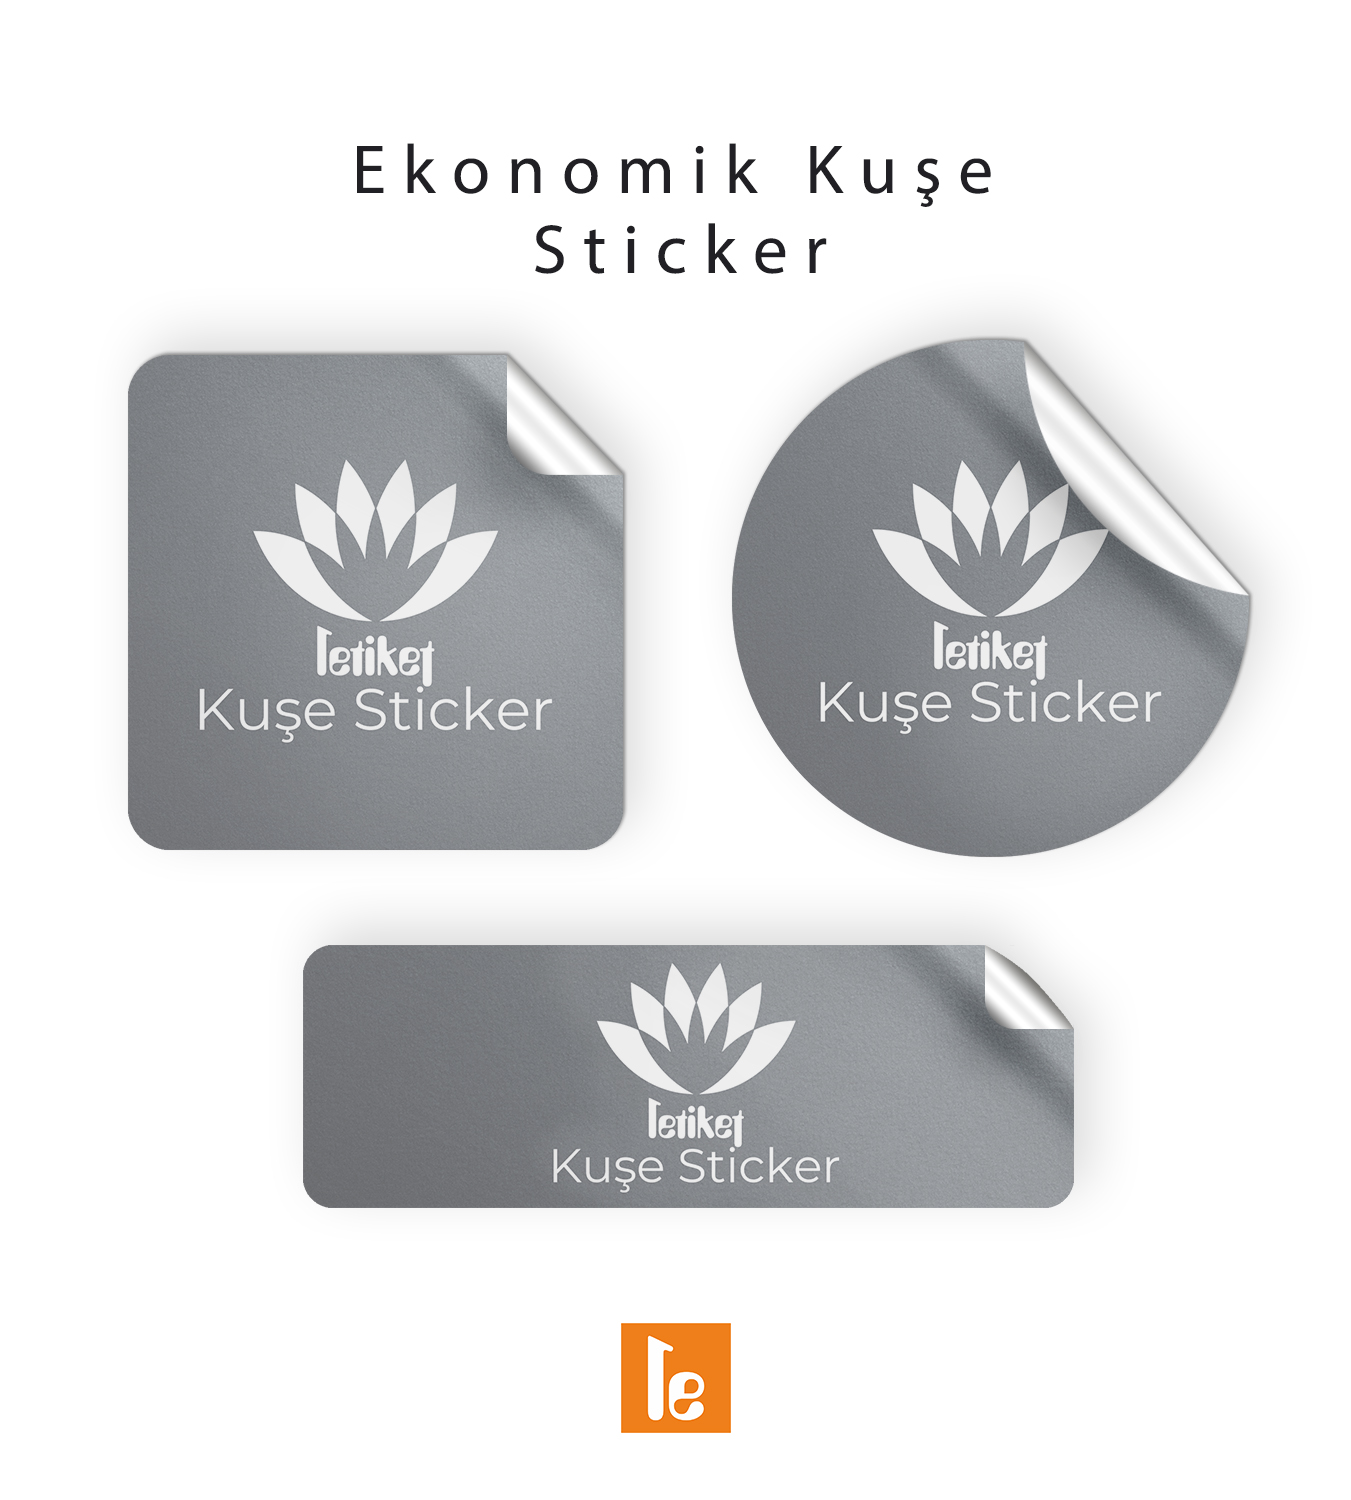 8.2×10.4 Ekonomik Düz Kesim Sticker/Etiket